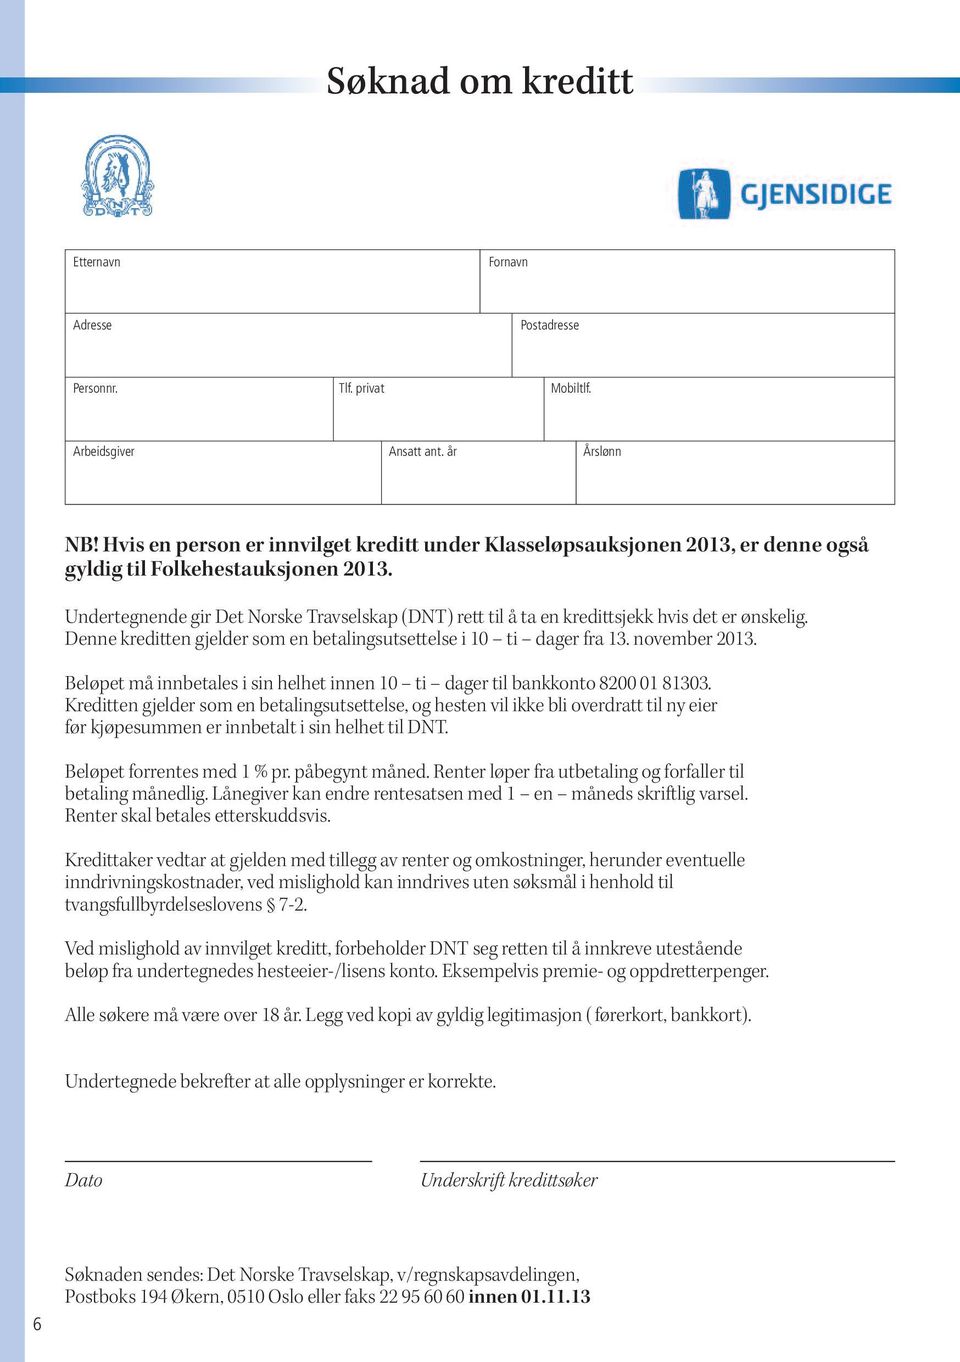 Undertegnende gir Det Norske Travselskap (DNT) rett til å ta en kredittsjekk hvis det er ønskelig. Denne kreditten gjelder som en betalingsutsettelse i 10 ti dager fra 13. november 2013.